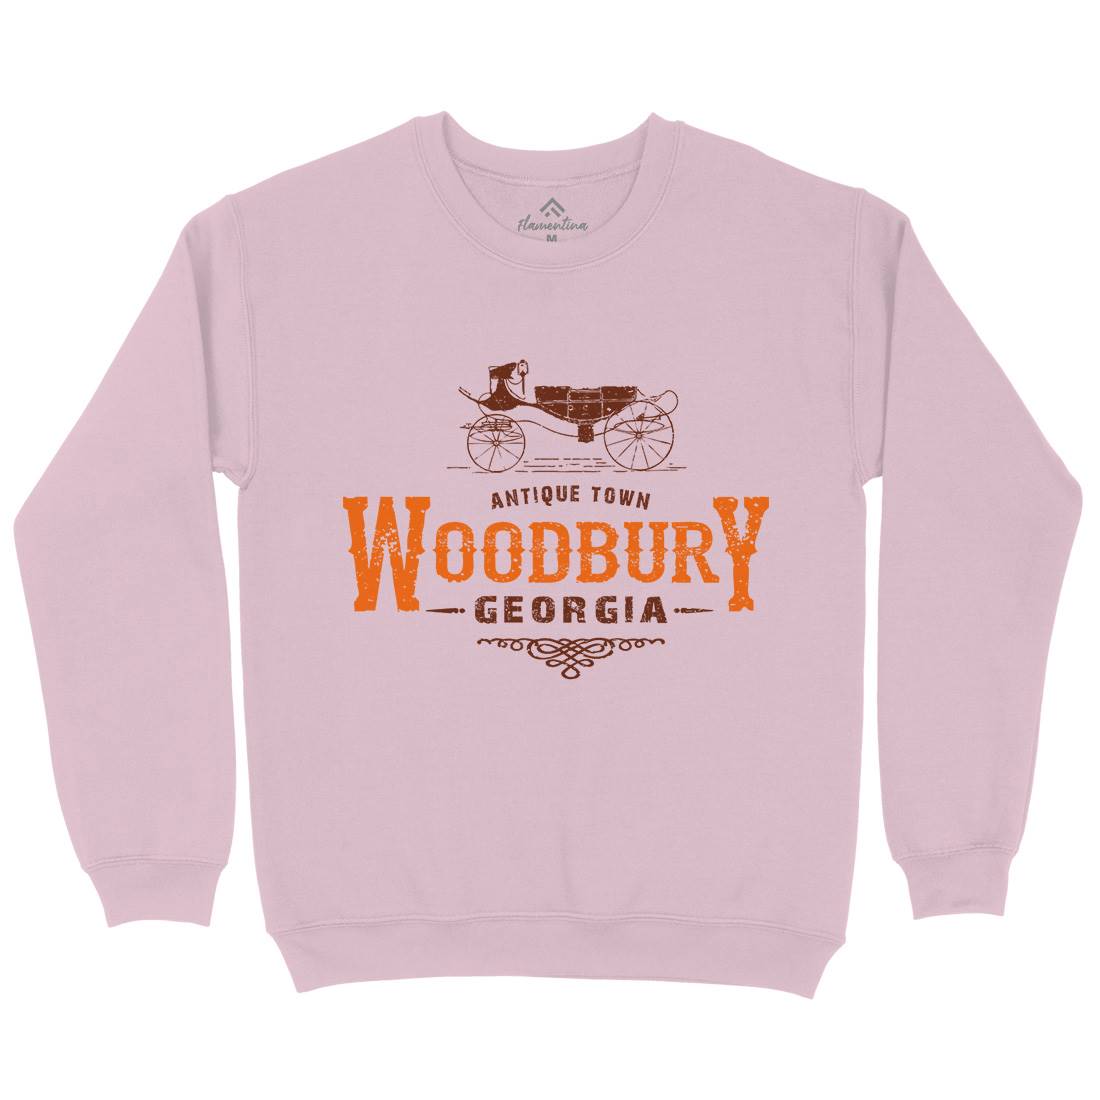 Woodbury Kids Crew Neck Sweatshirt Horror D347